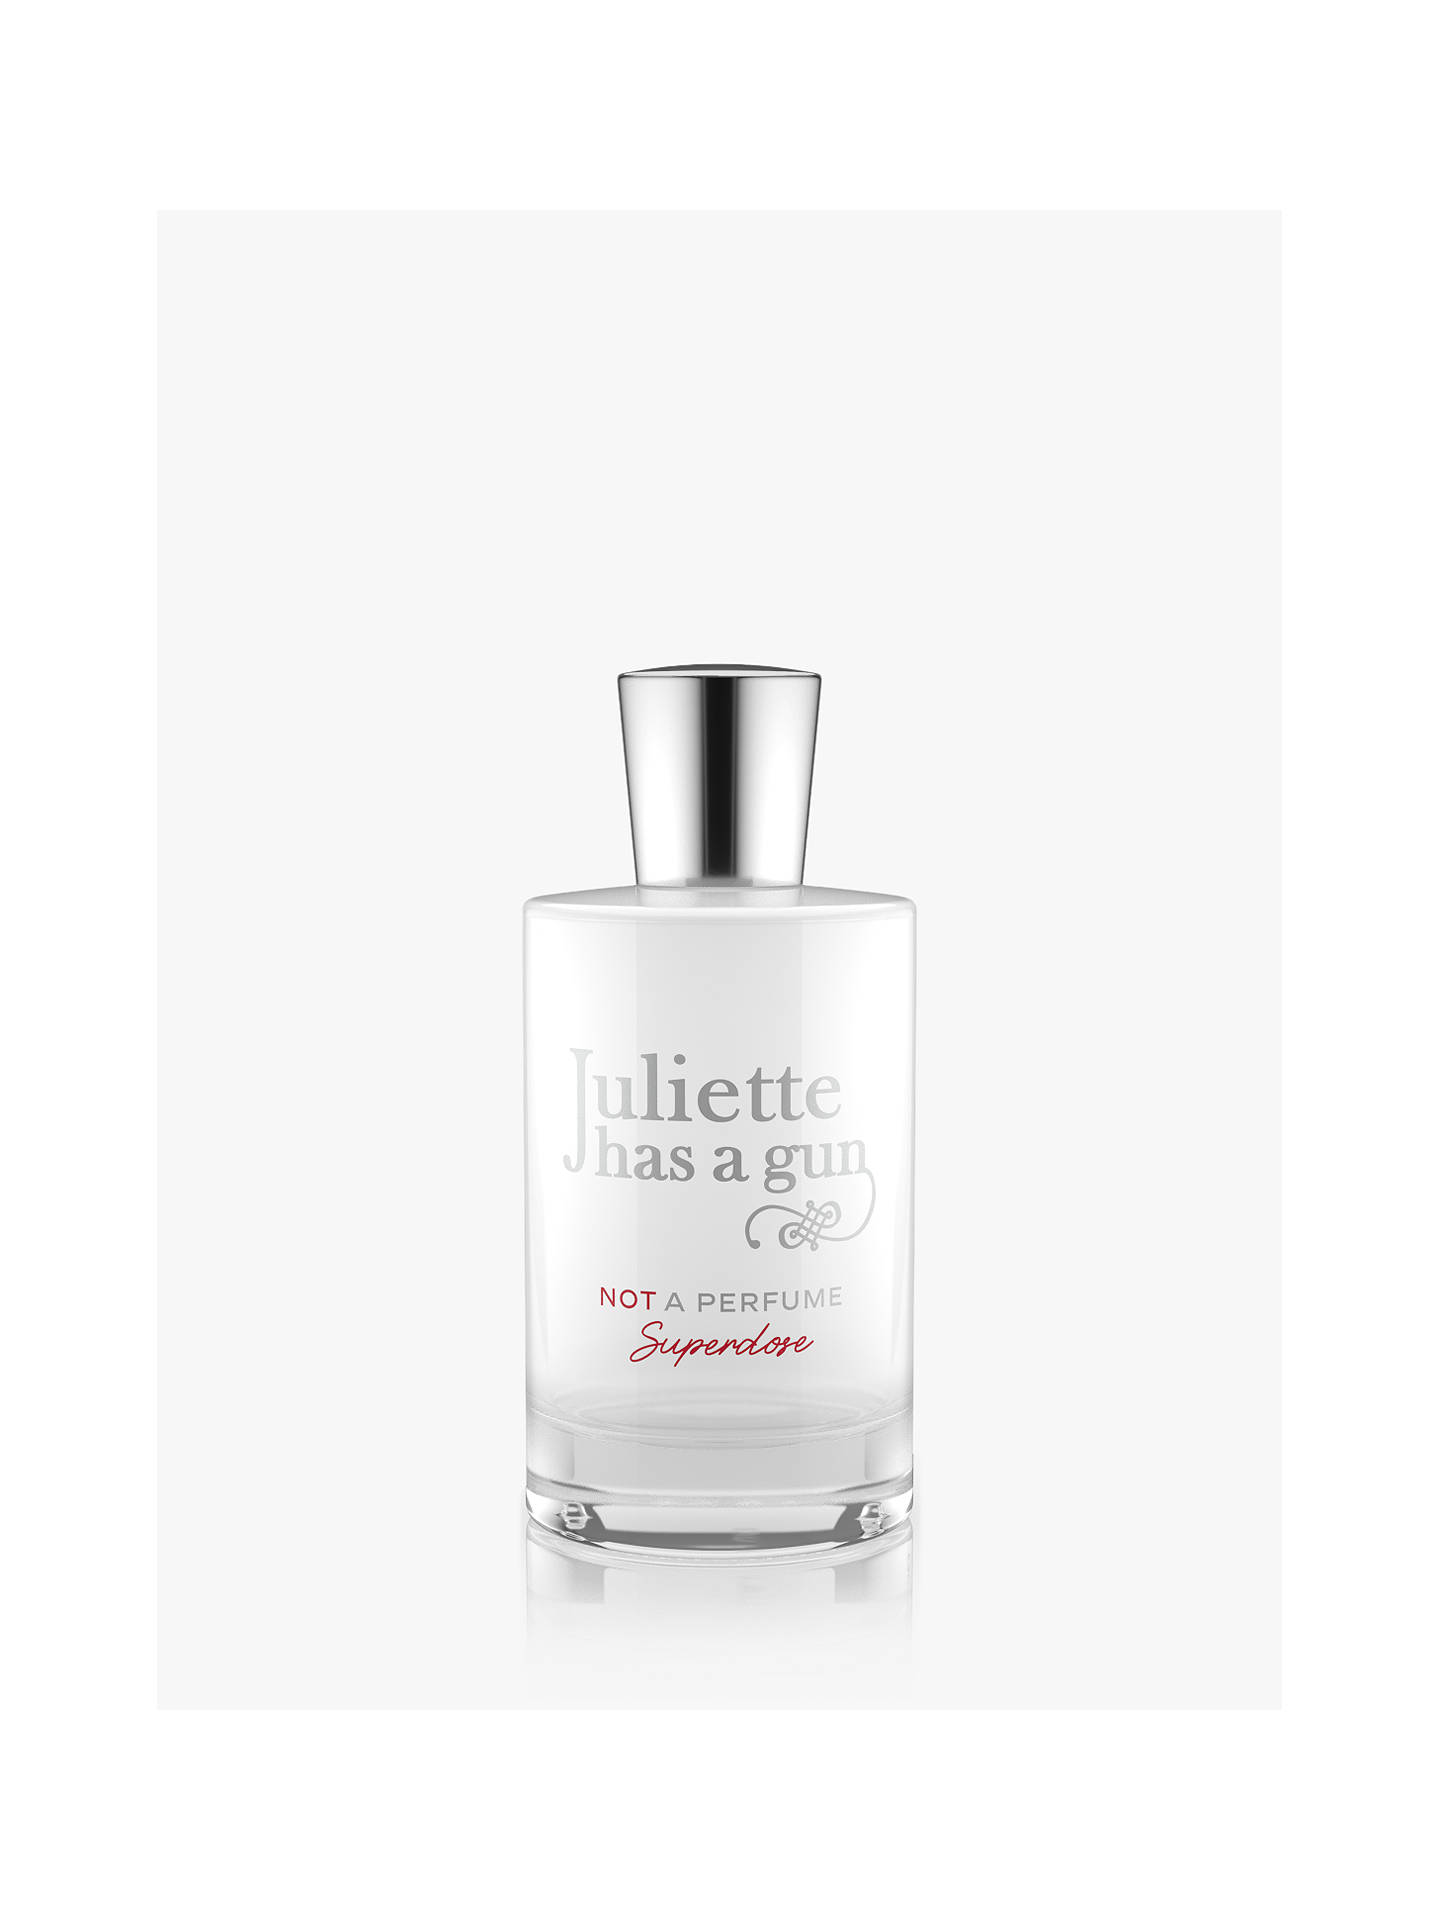 Juliette has a Gun Not a Perfume Superdose Eau de Parfum